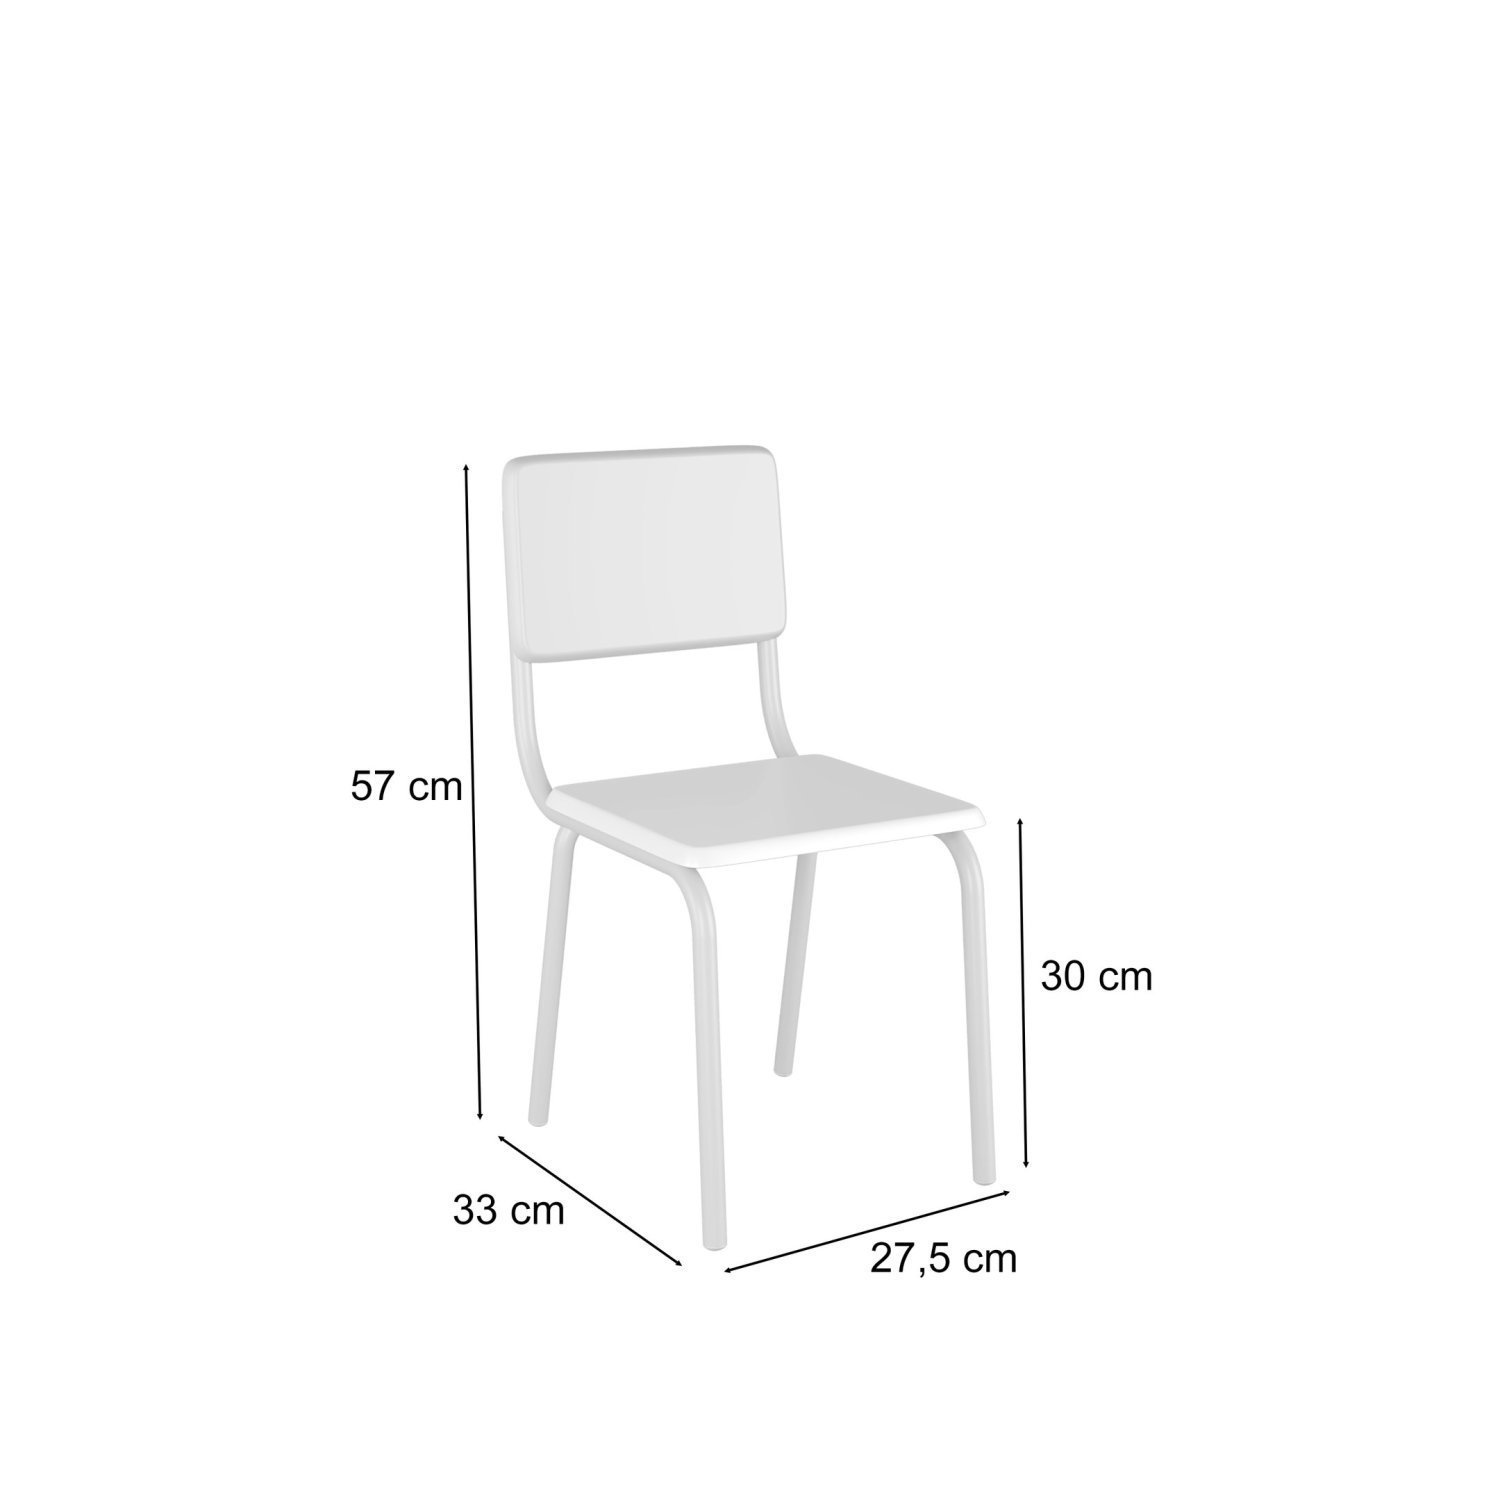 Conjunto Infantil com Mesa 75x50cm com 2 Cadeiras Laura - 4